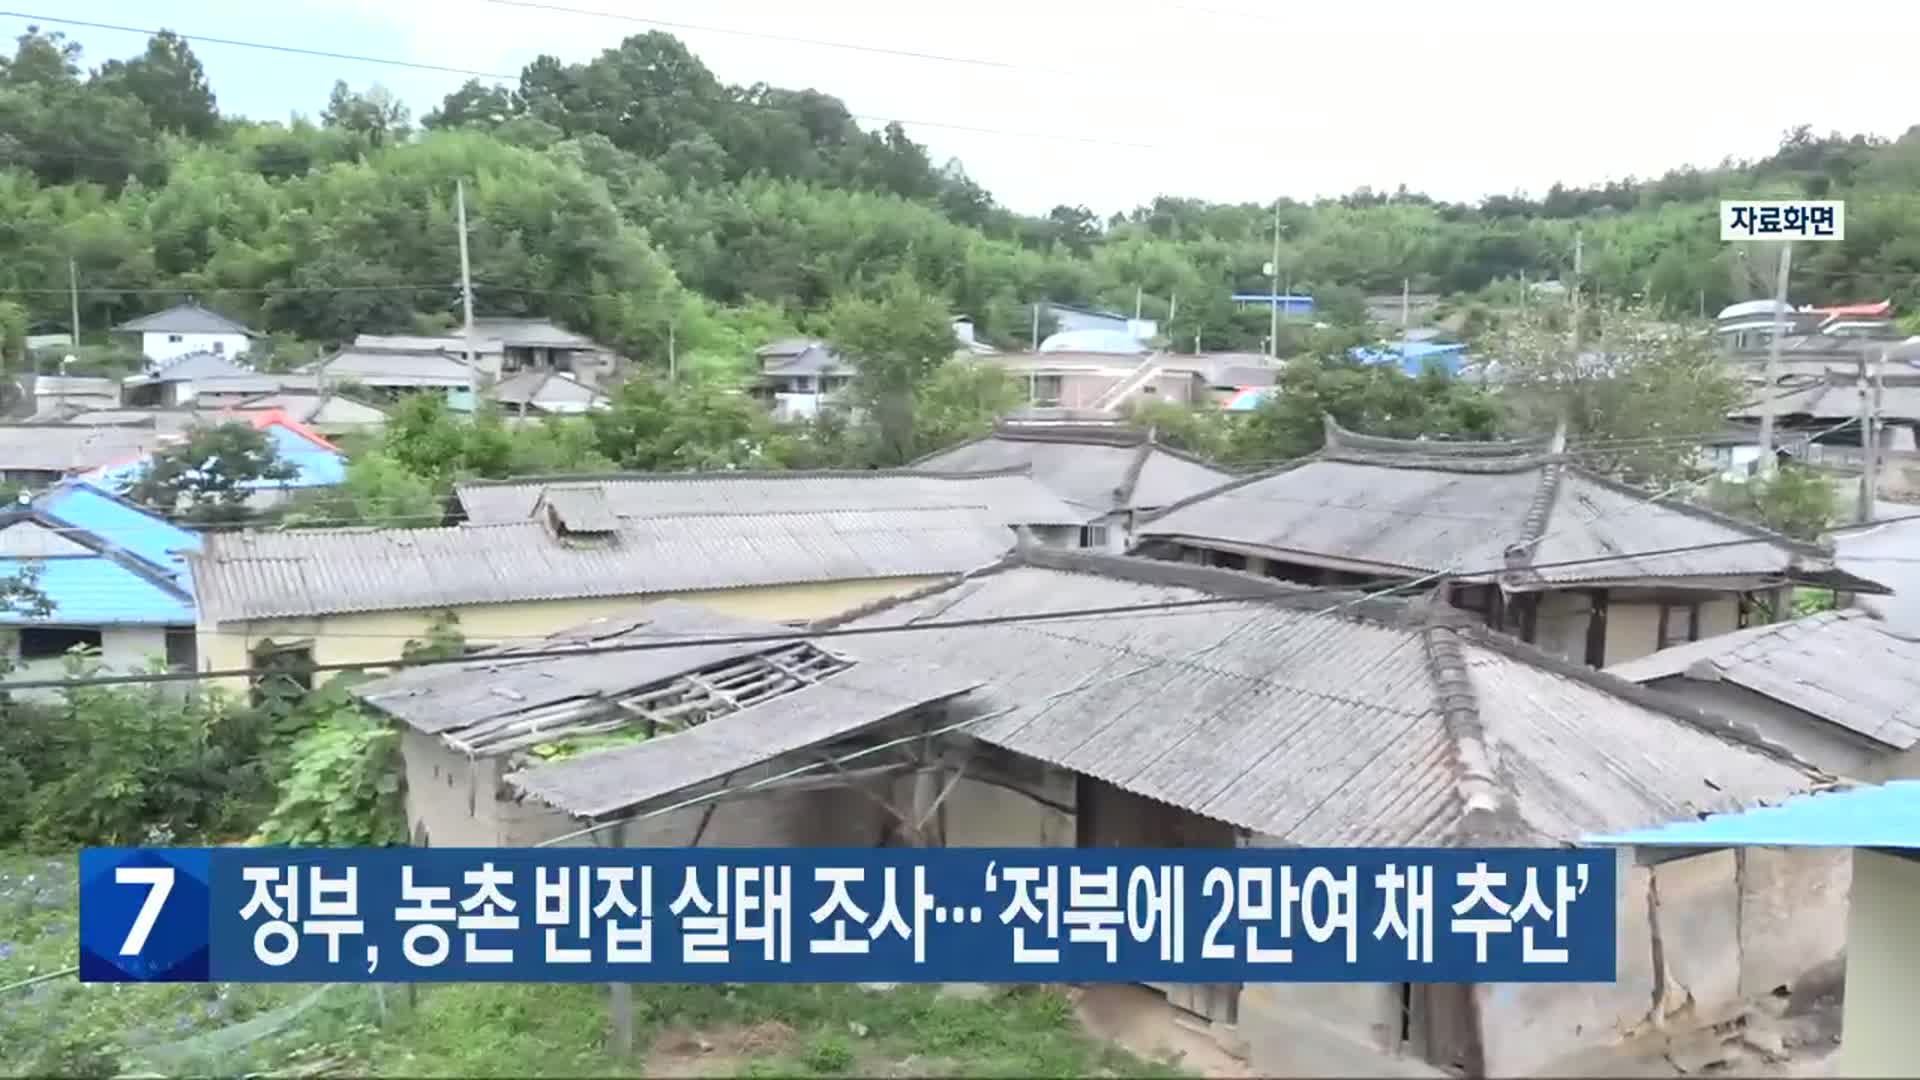 정부, 농촌 빈집 실태 조사…‘전북에 2만여 채 추산’